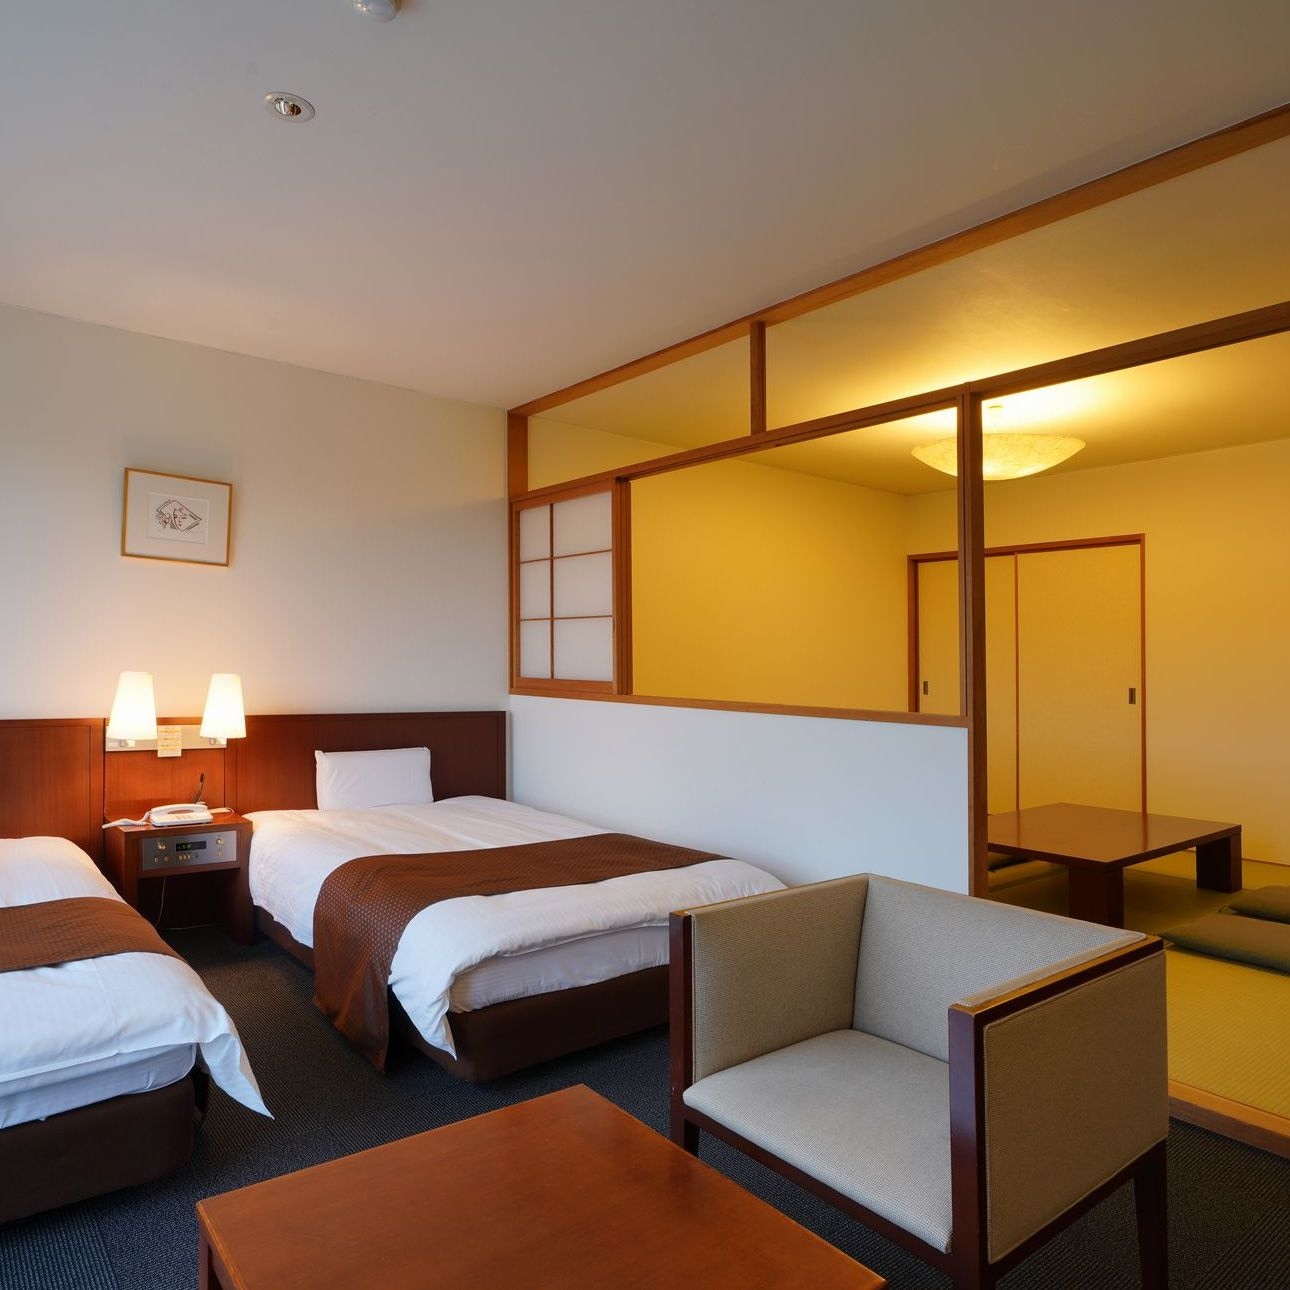 ตัวอย่างห้อง Hotel Chamber สไตล์ญี่ปุ่น-ตะวันตก